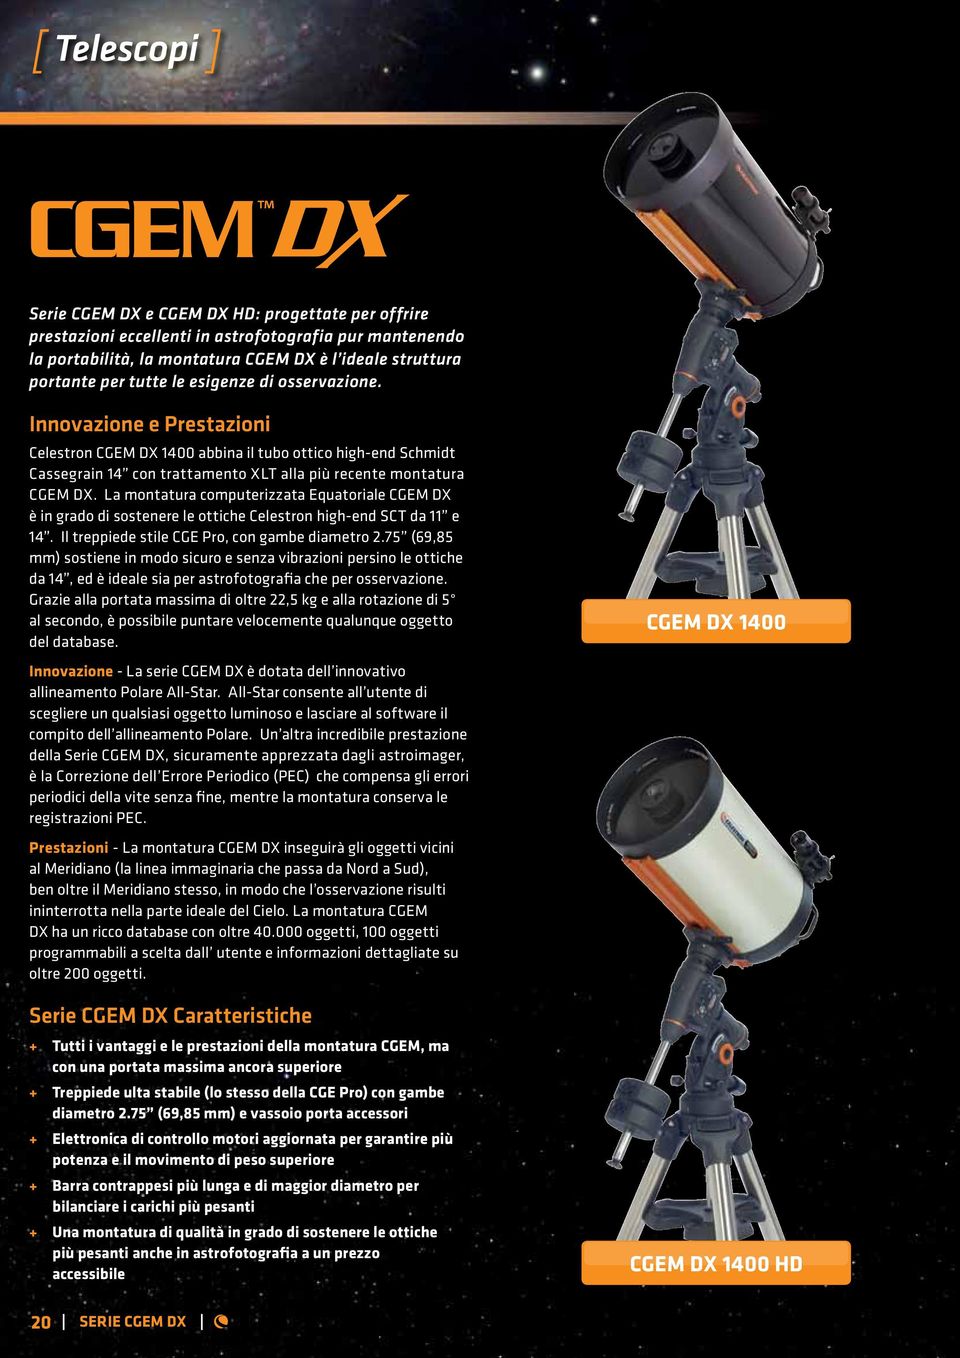 La montatura computerizzata Equatoriale CGEM DX è in grado di sostenere le ottiche Celestron high-end SCT da 11 e 14. Il treppiede stile CGE Pro, con gambe diametro 2.